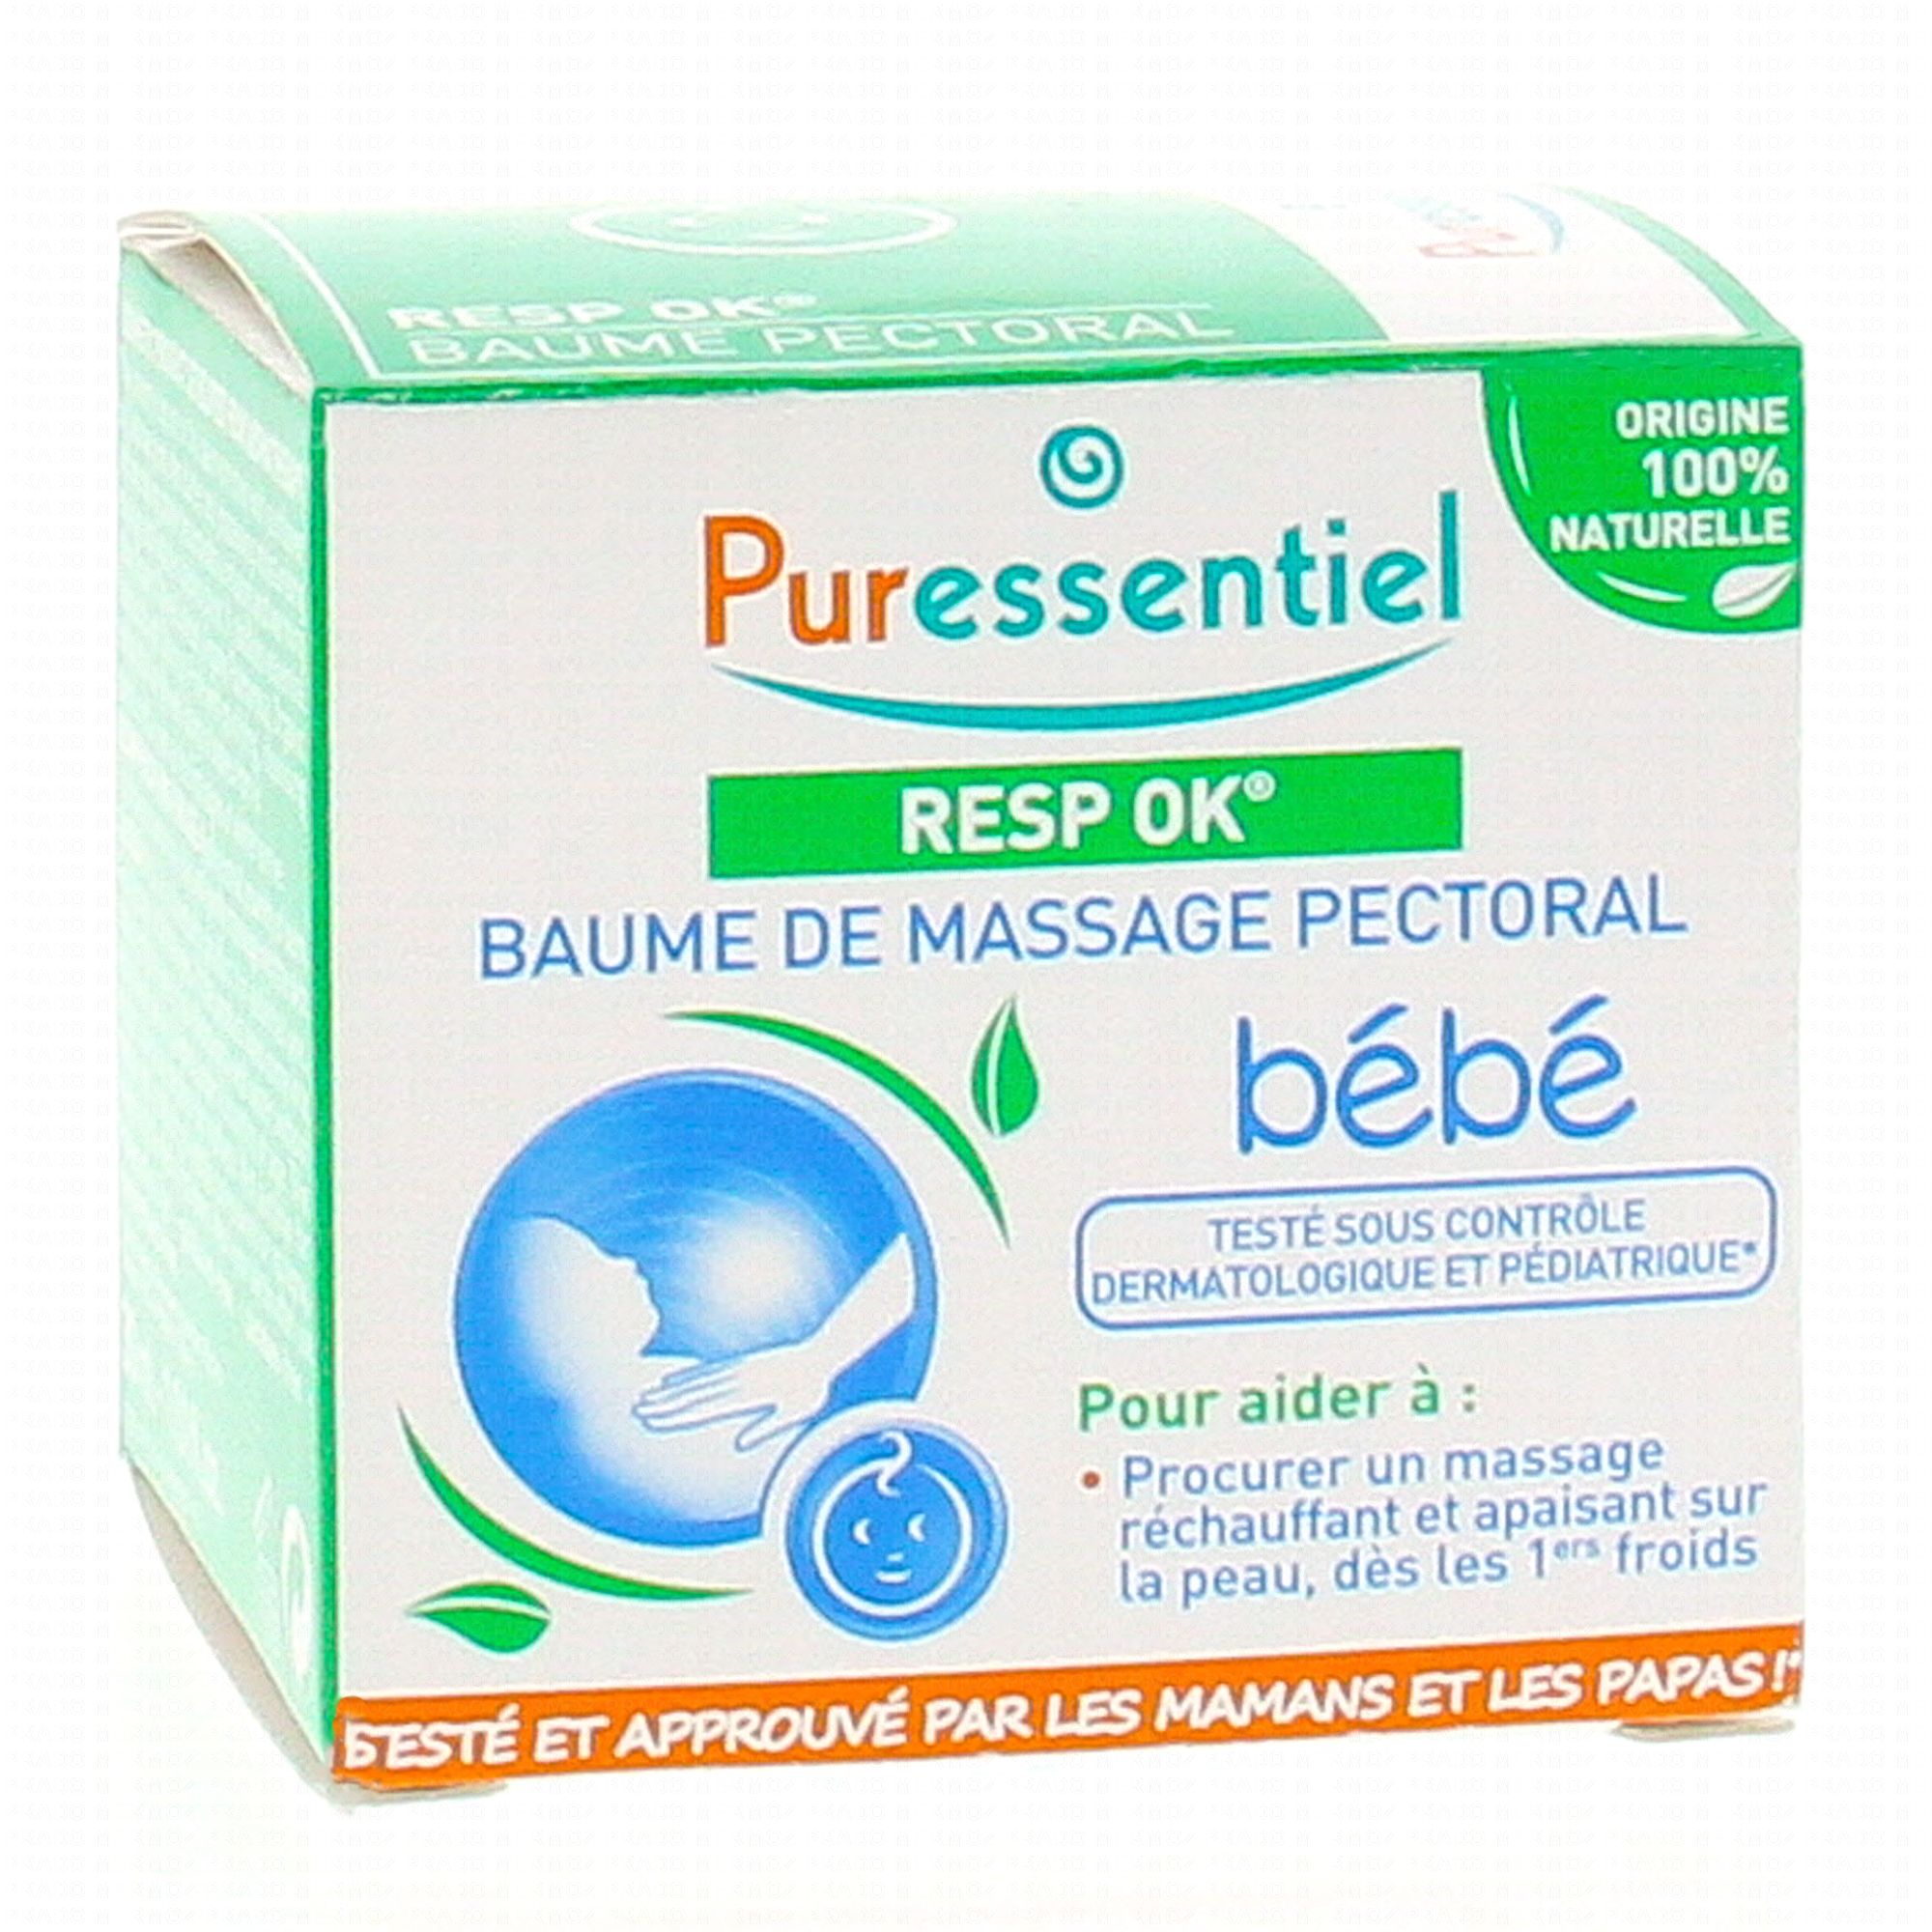 Puressentiel Resp OK Baume de Massage Pectoral Enfant 60 ml